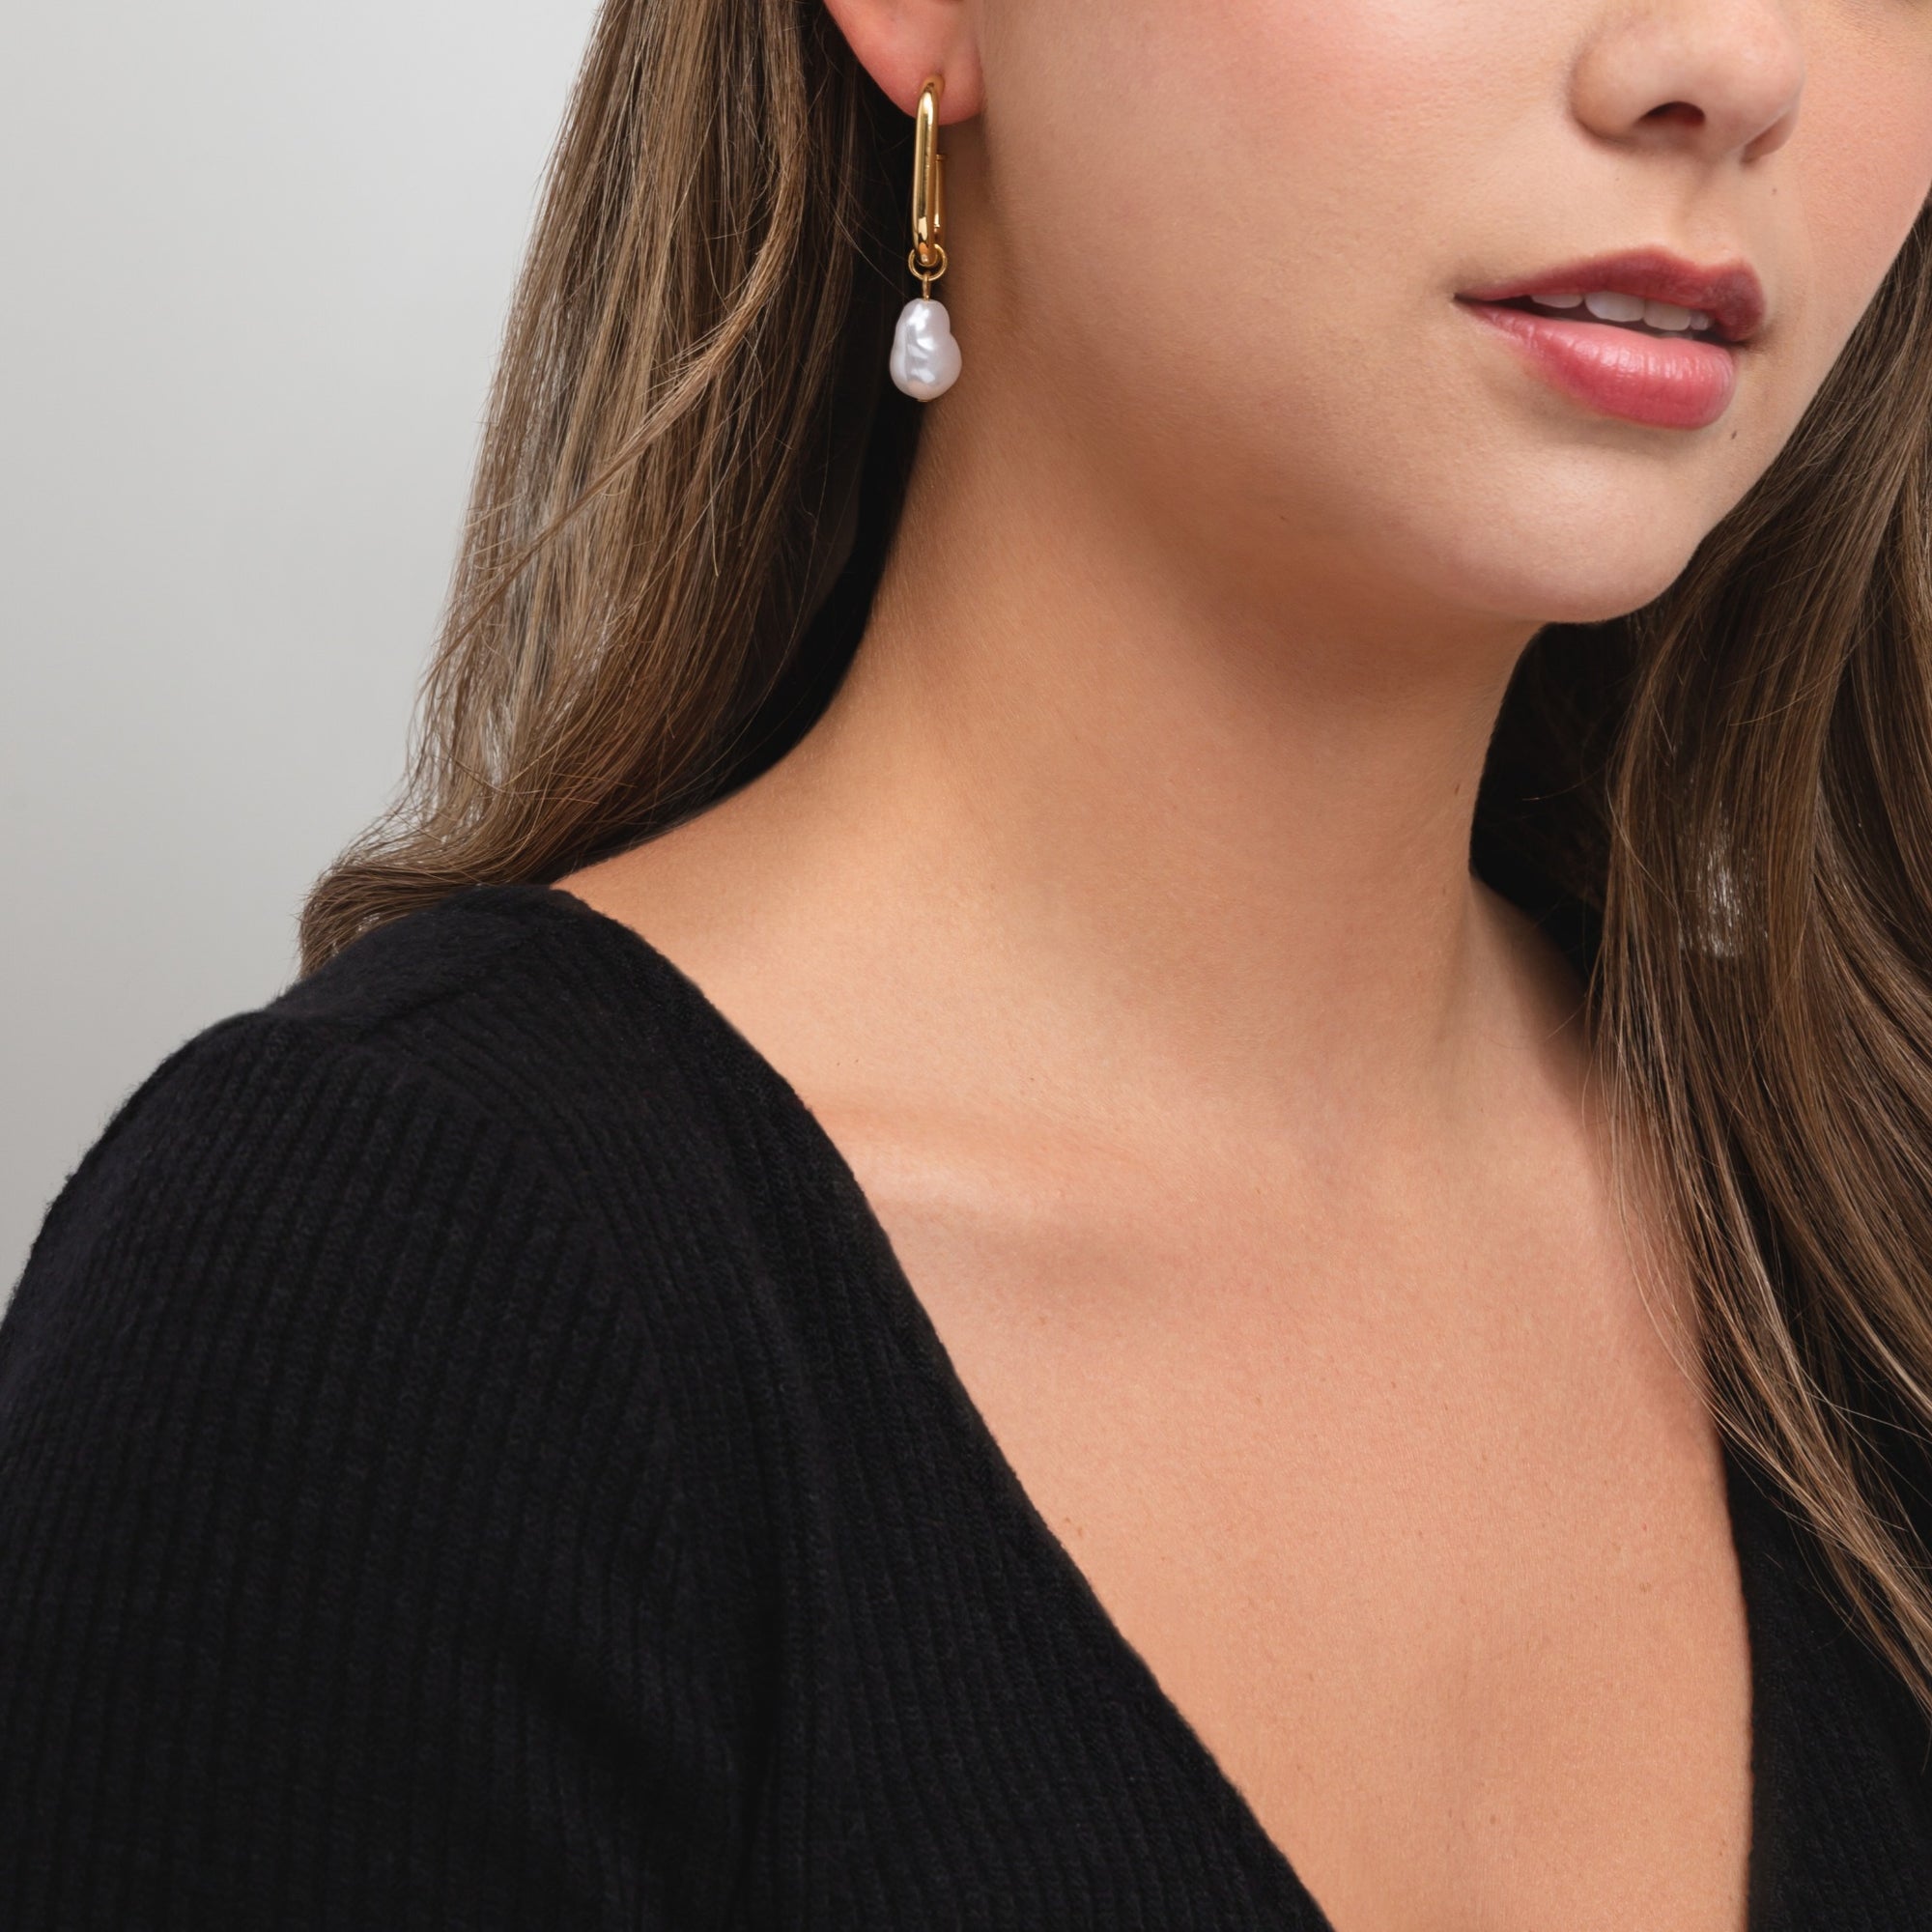 Semi-open golden hoop earrings with pearl pendant